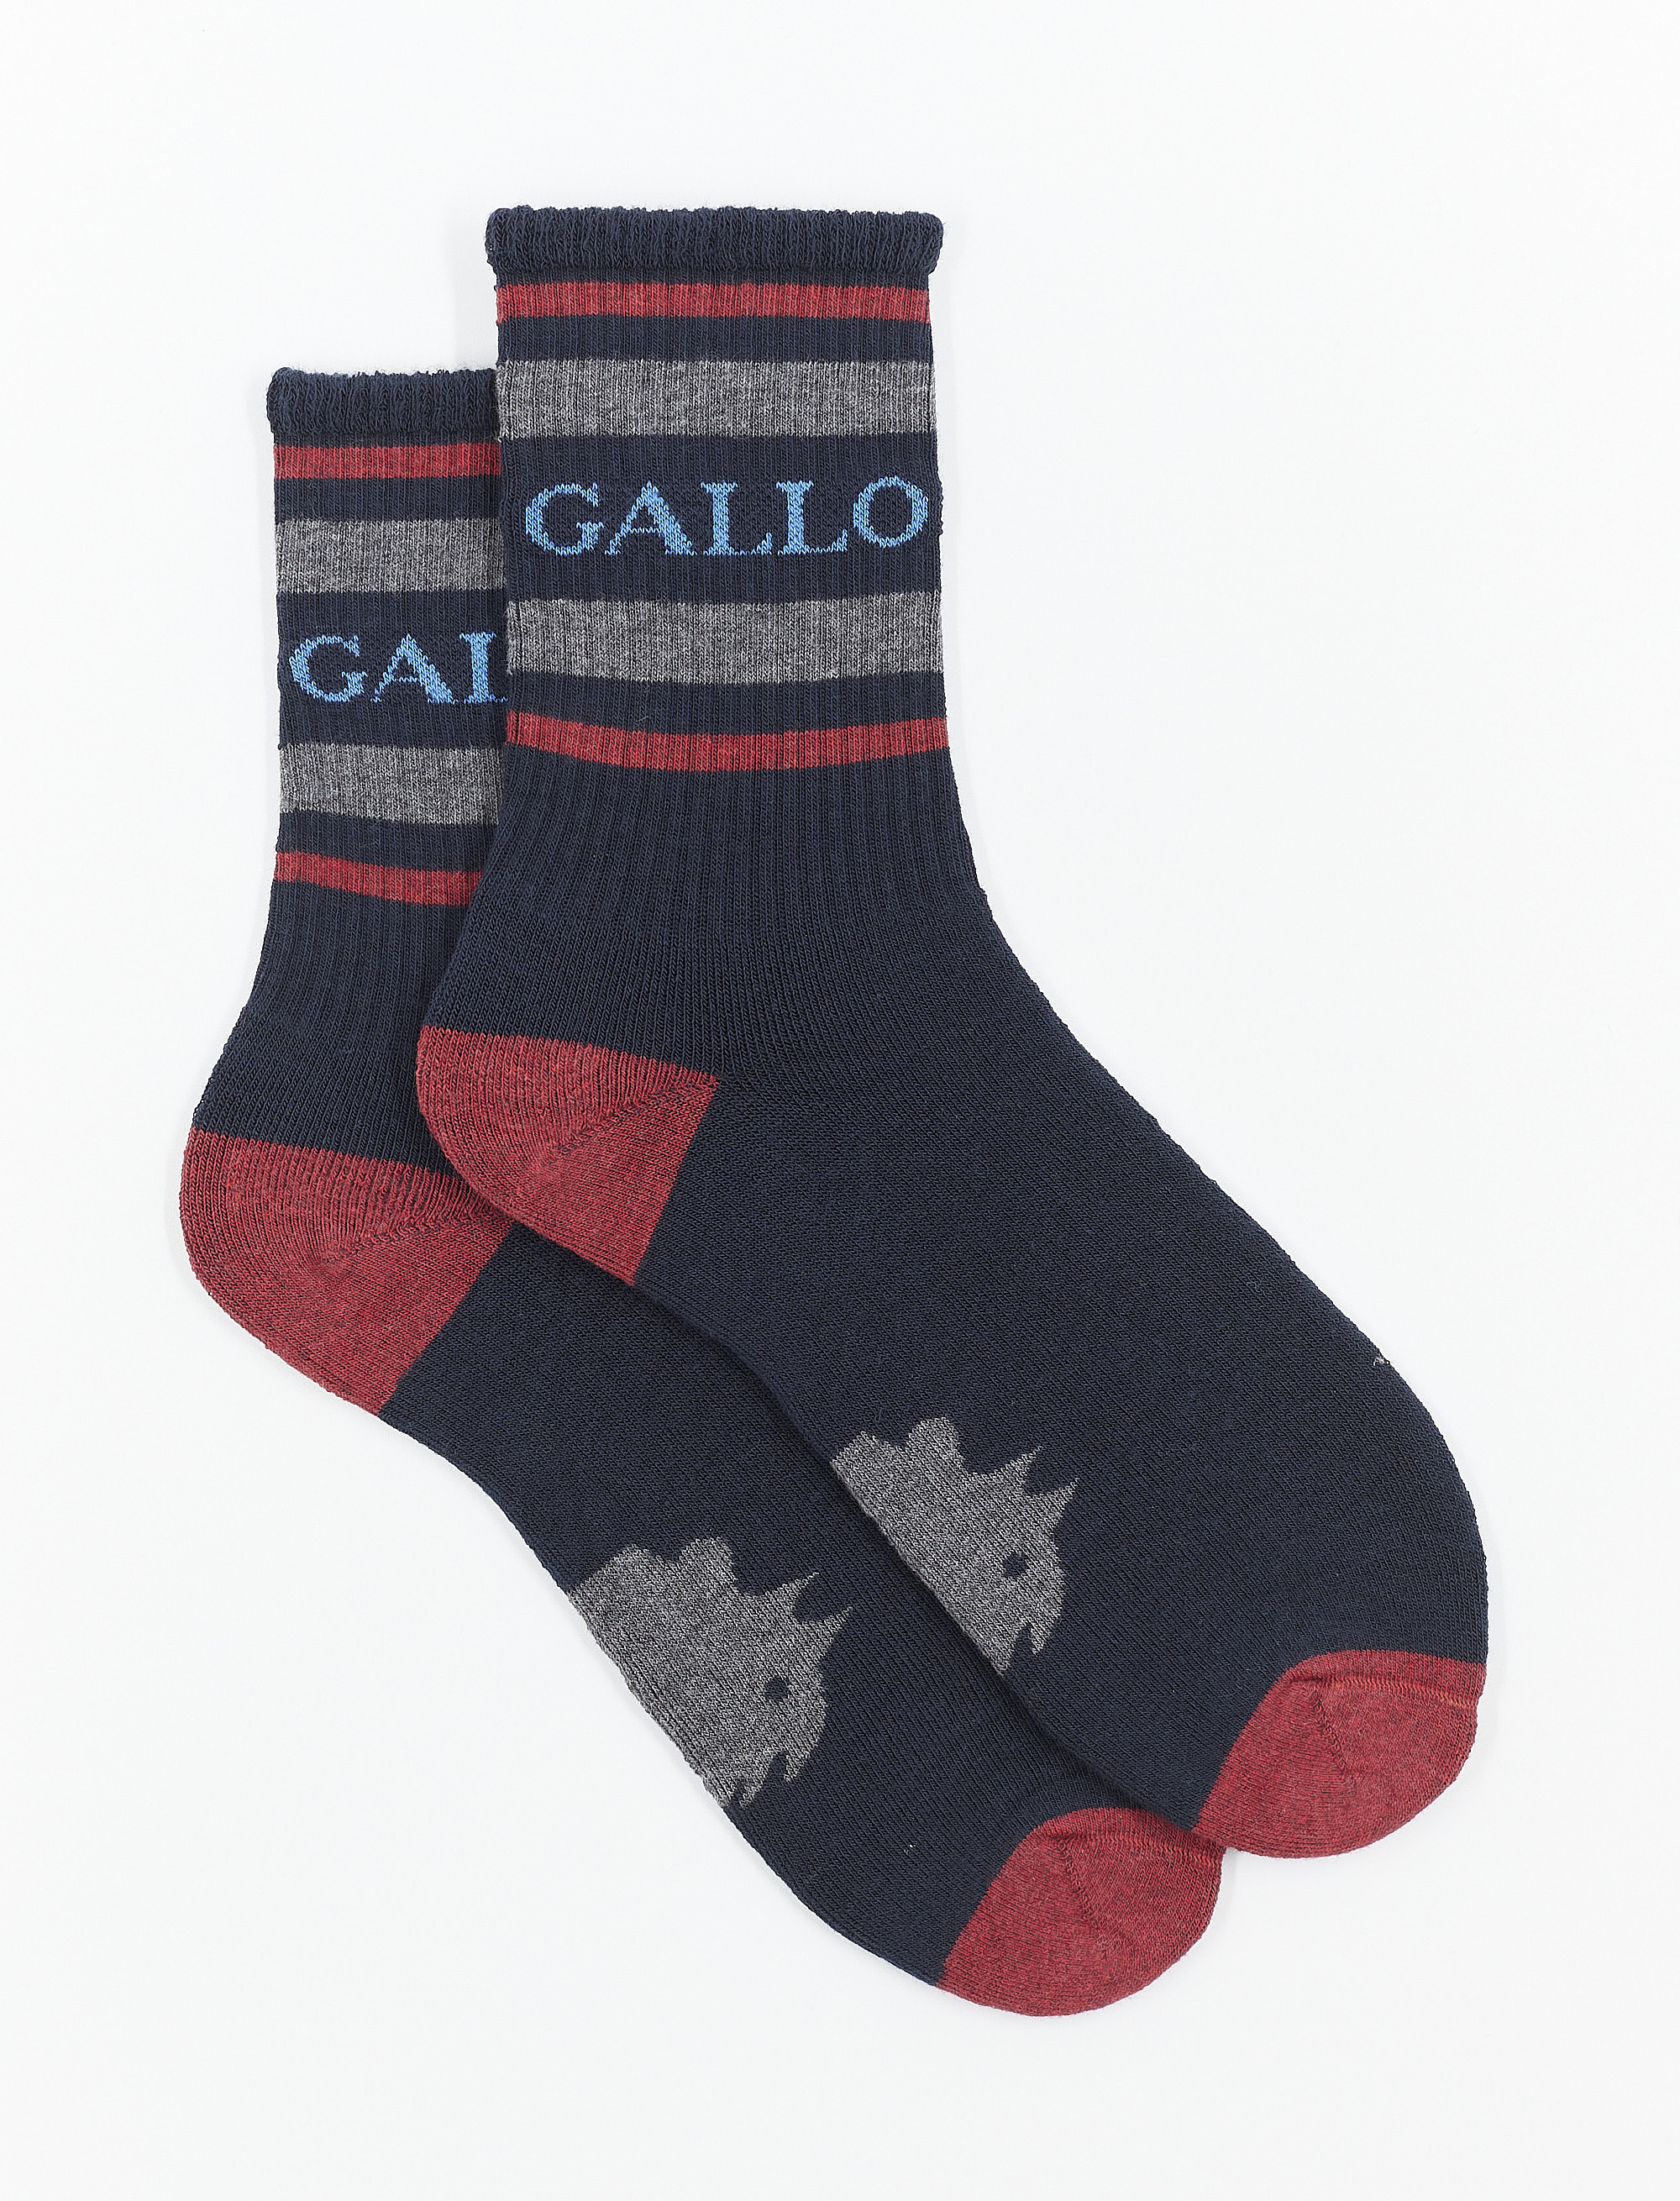 Calze corte donna spugna di cotone blu navy con scritta gallo - Gallo 1927 - Official Online Shop